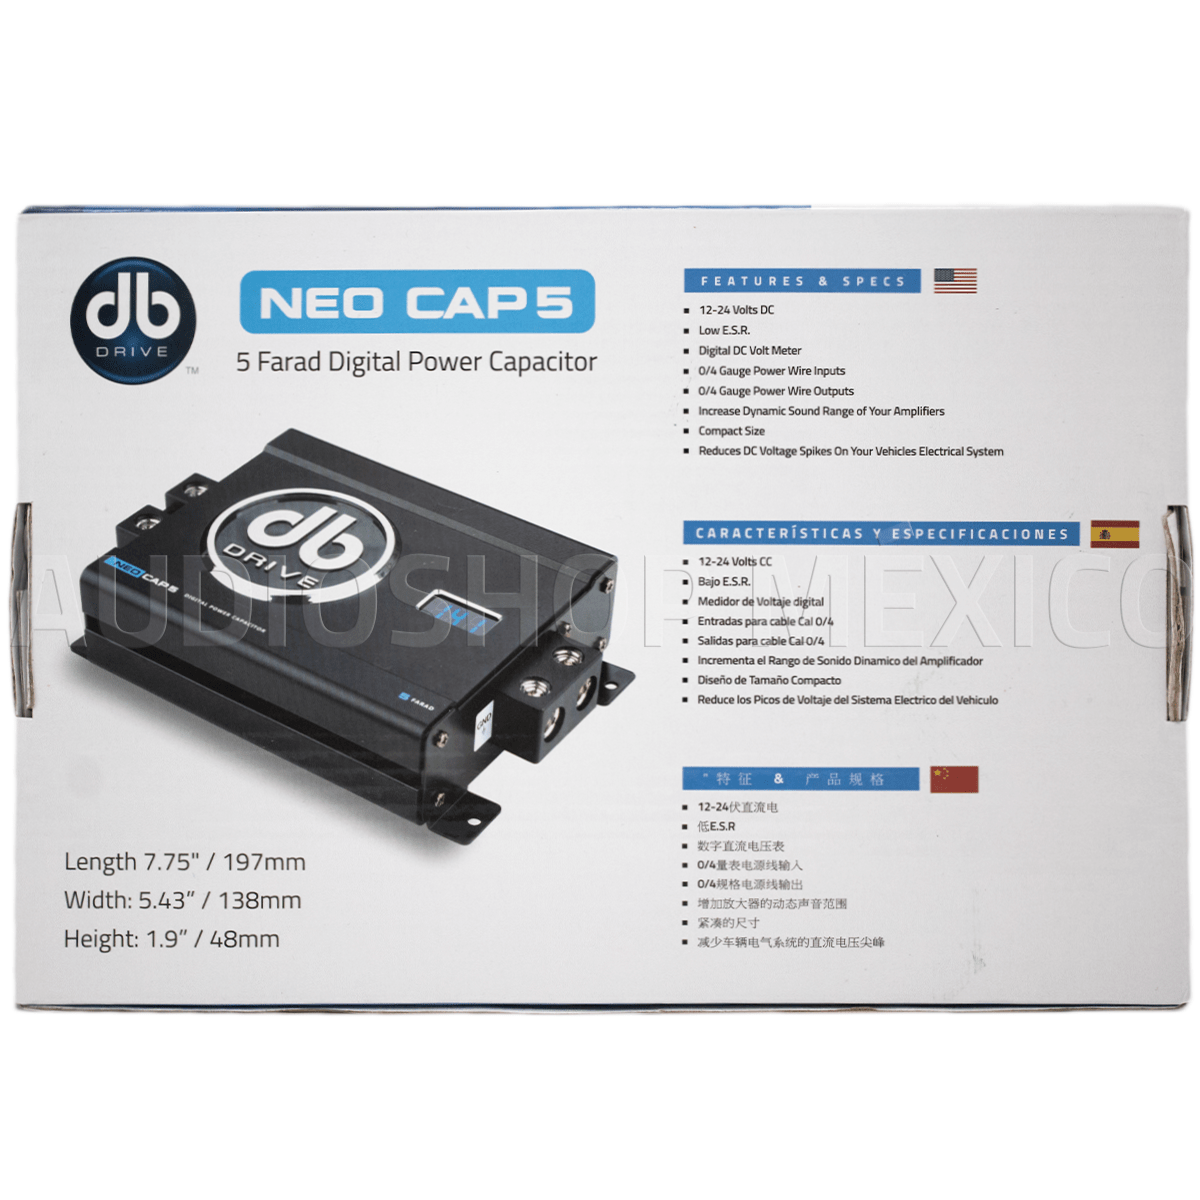 Capacitor de potencia Digital DB Drive NEOCAP5 5 Faradios 12-24 VDC Tamaño compacto con medidor de voltaje